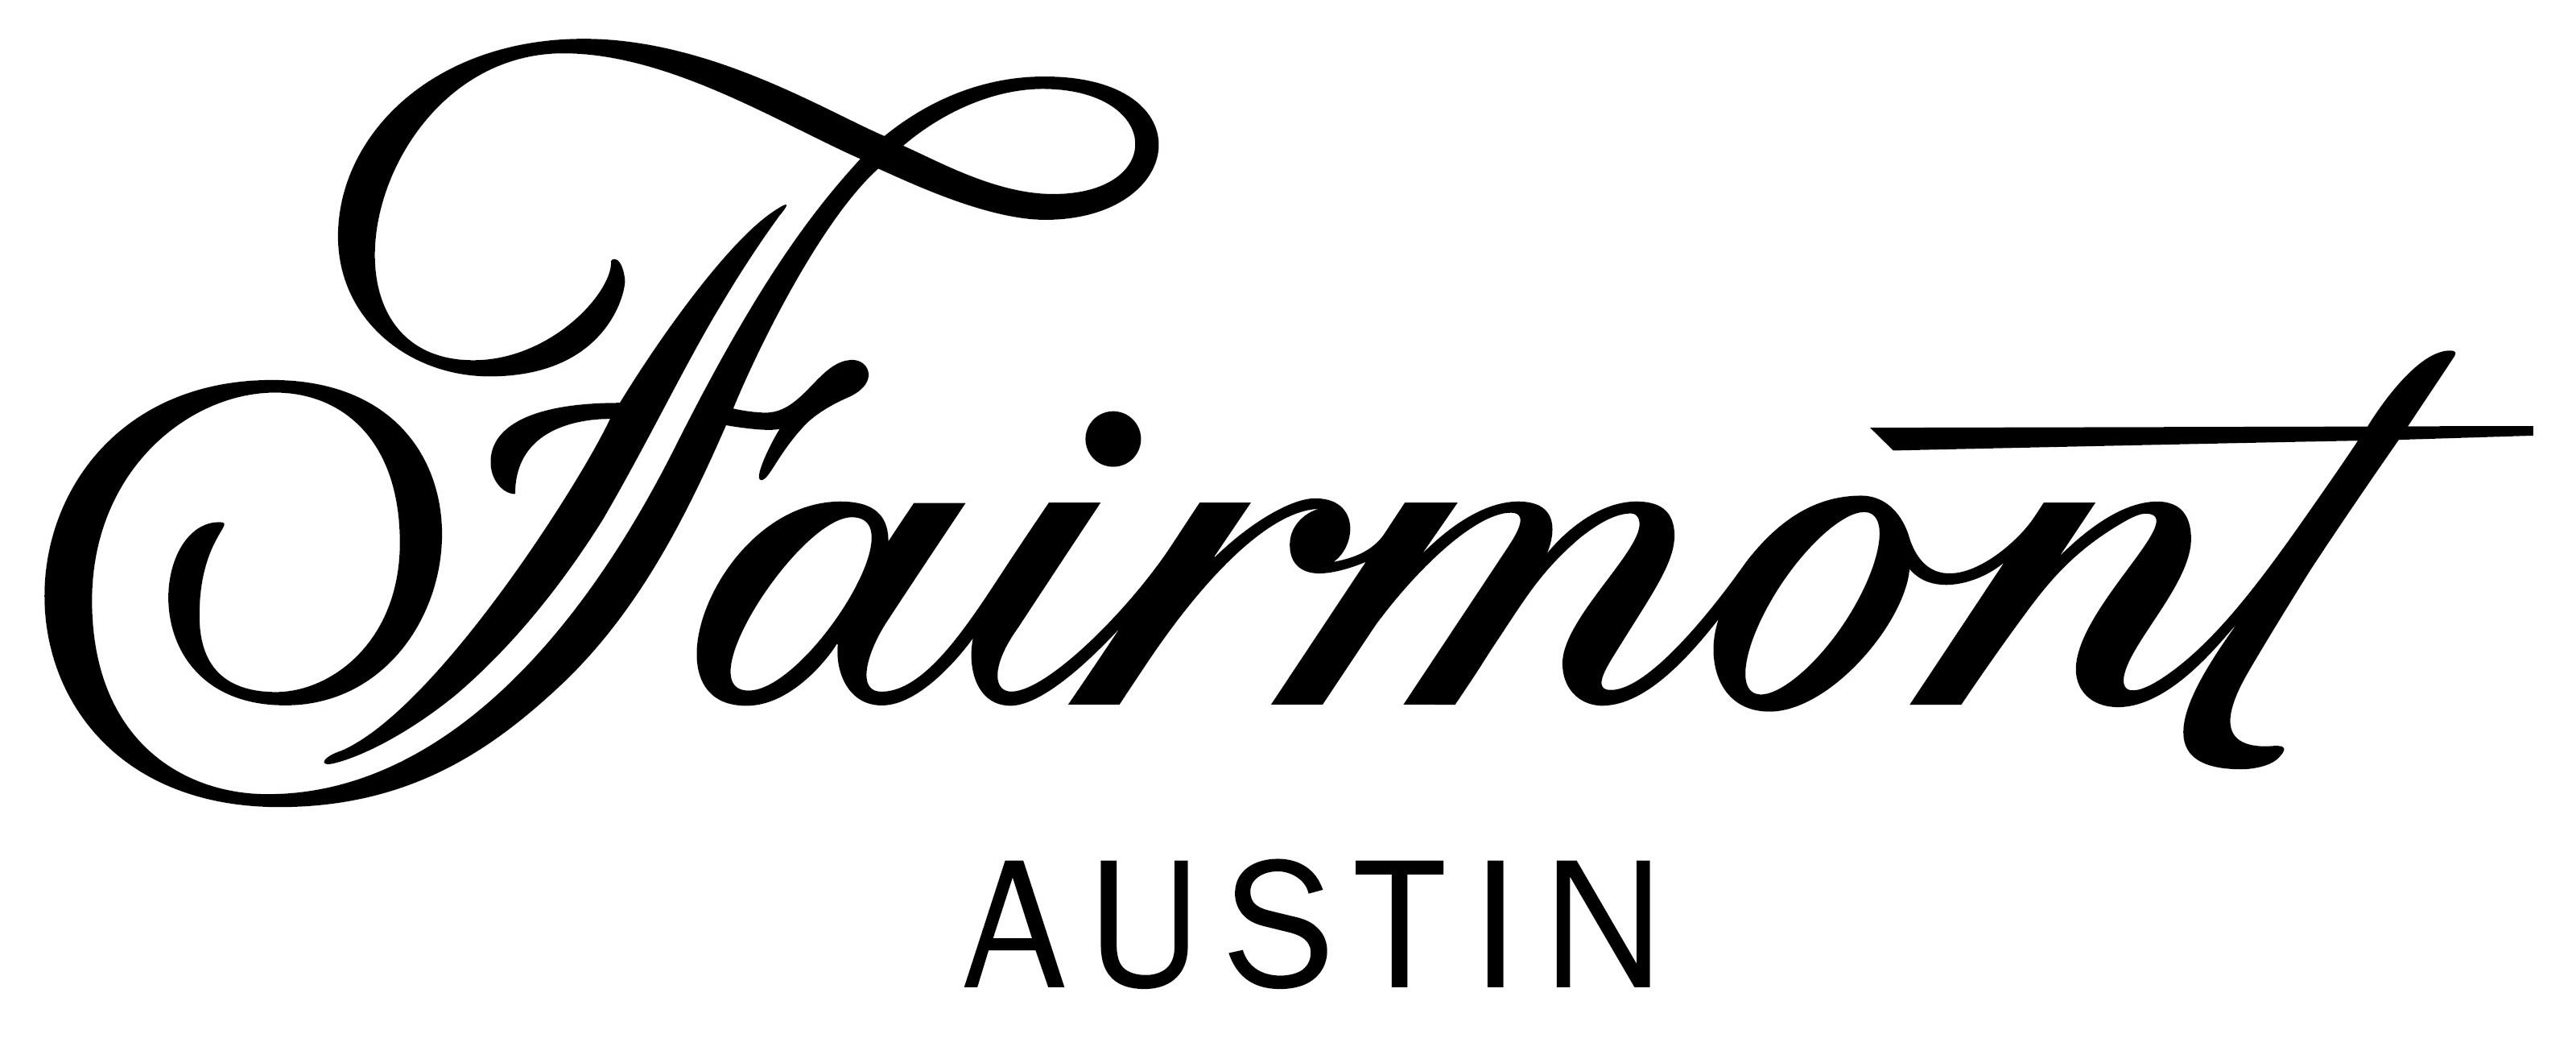 Fairmont Austin Logo - Thundercloud Subs Sub Sandwich Shop